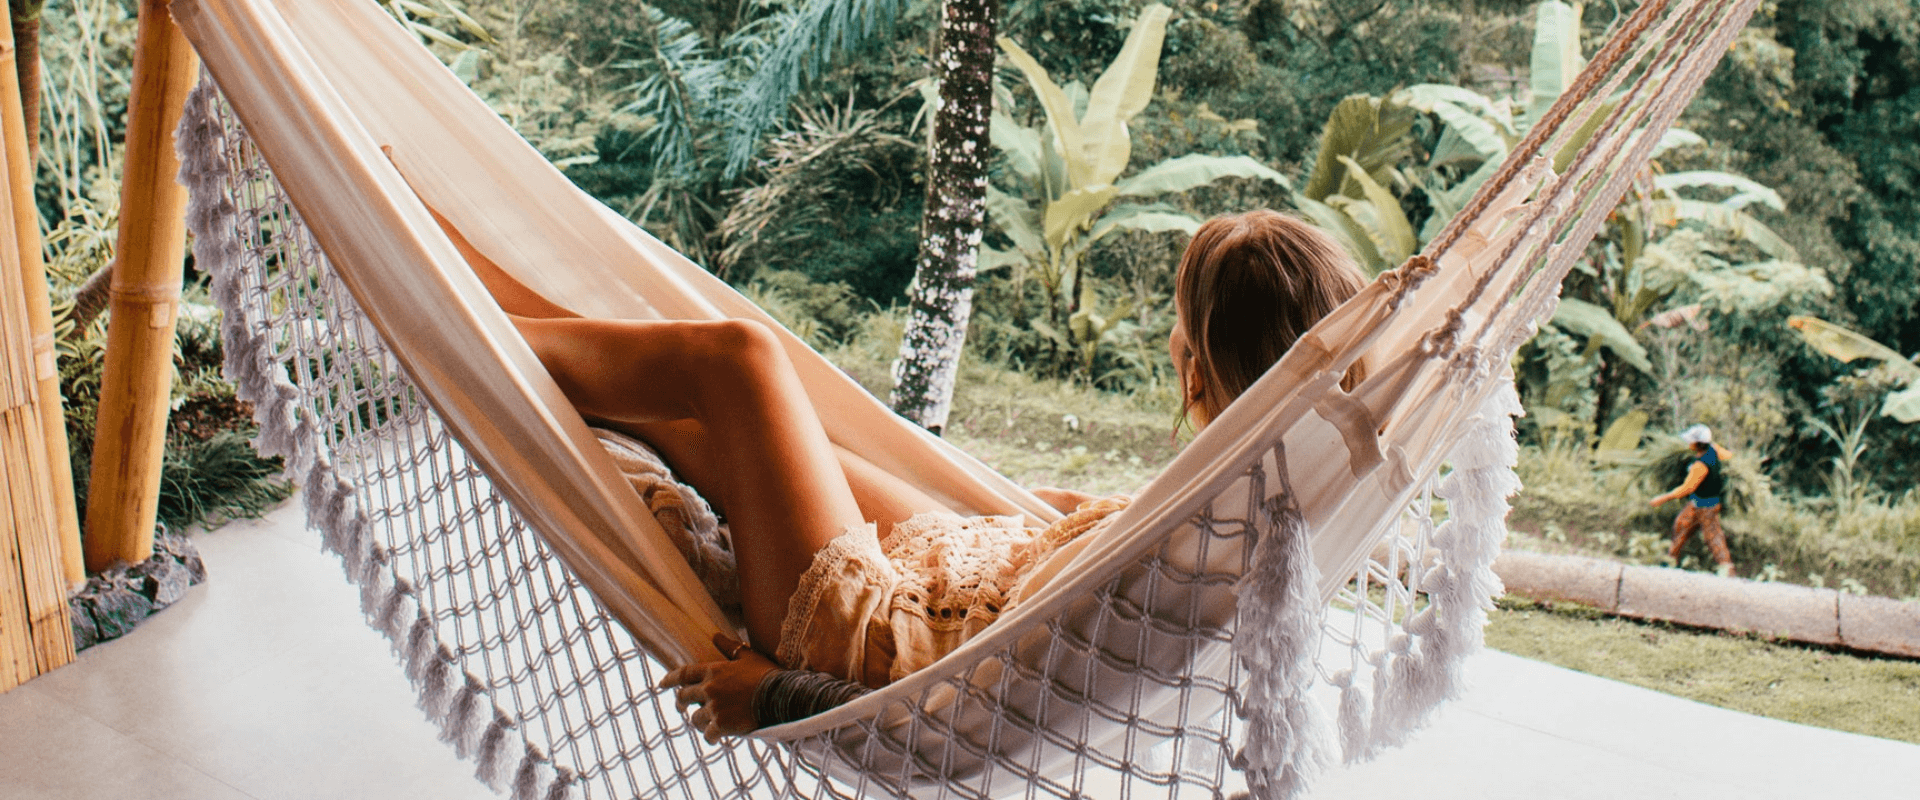 5 formas de desconectar en vacaciones